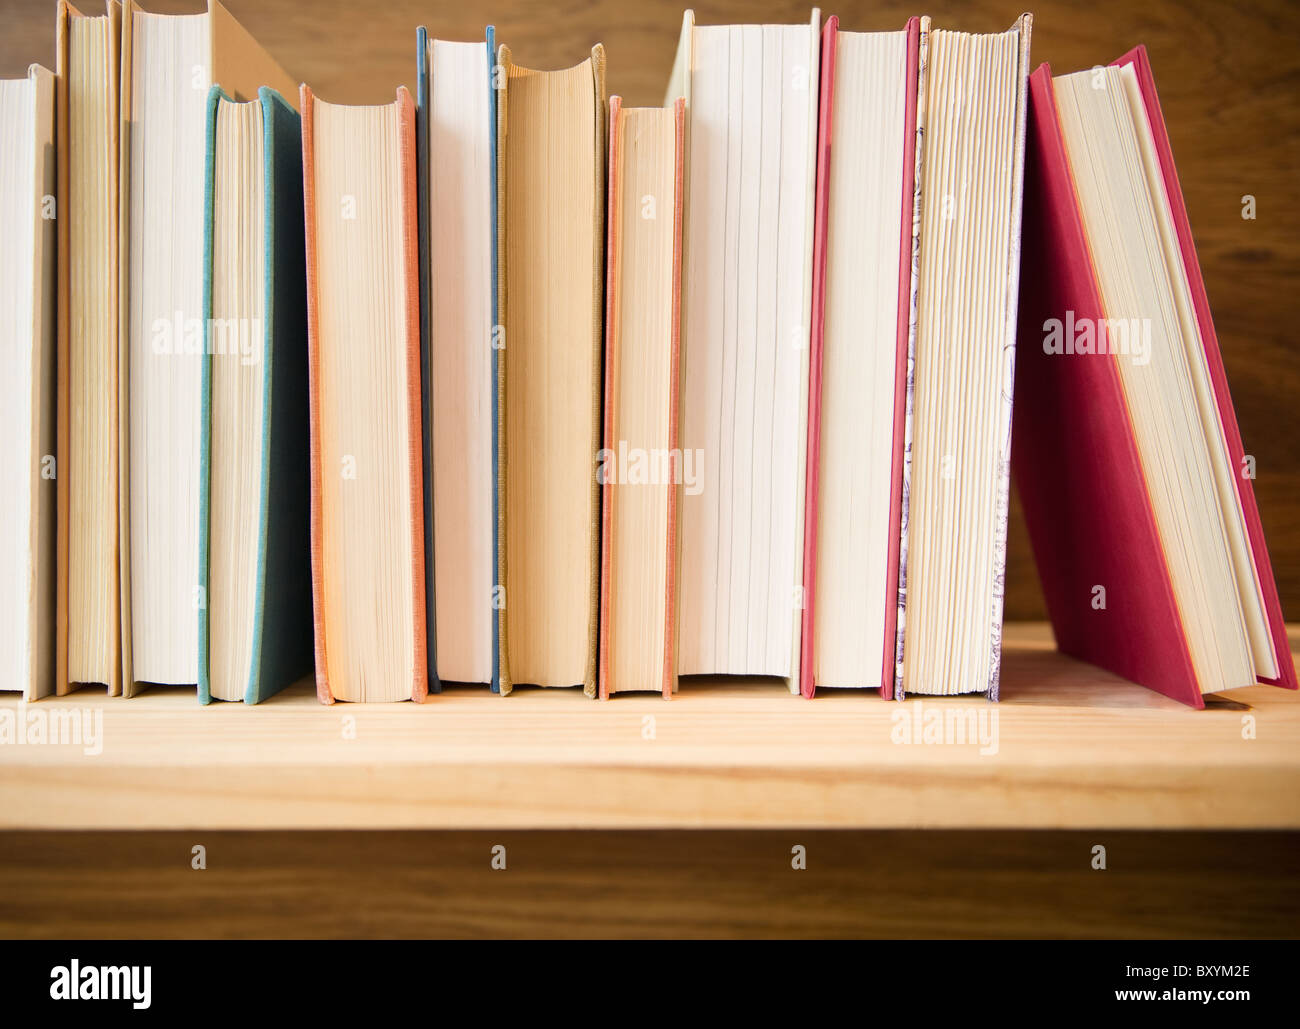 Fila de libros en la estantería Foto de stock